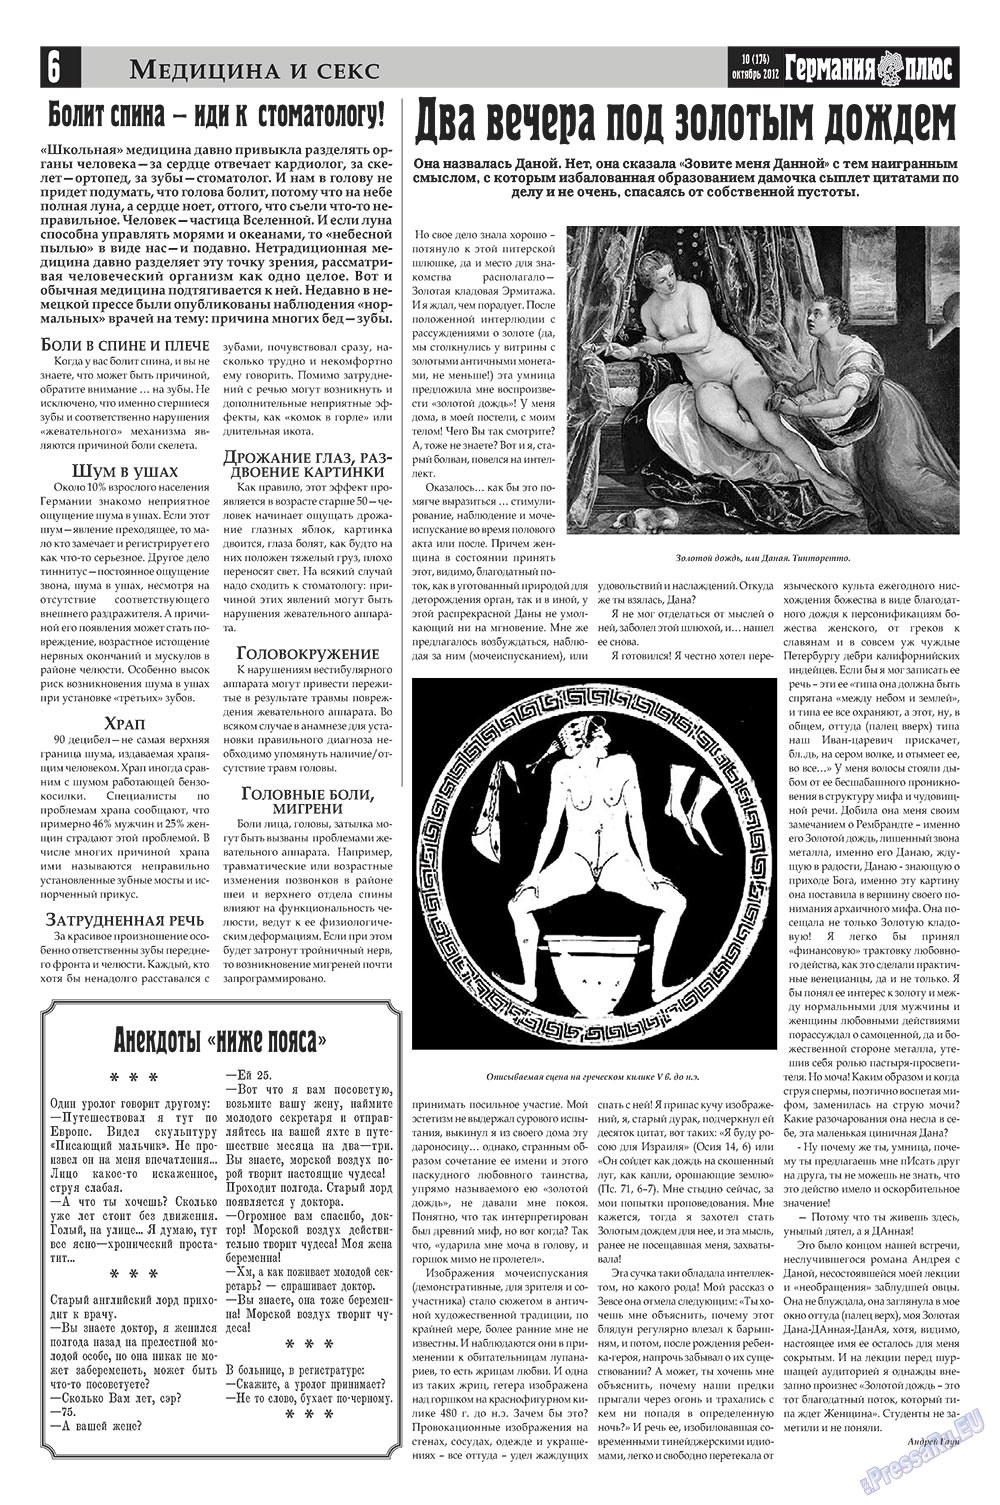 Германия плюс, газета. 2012 №10 стр.6